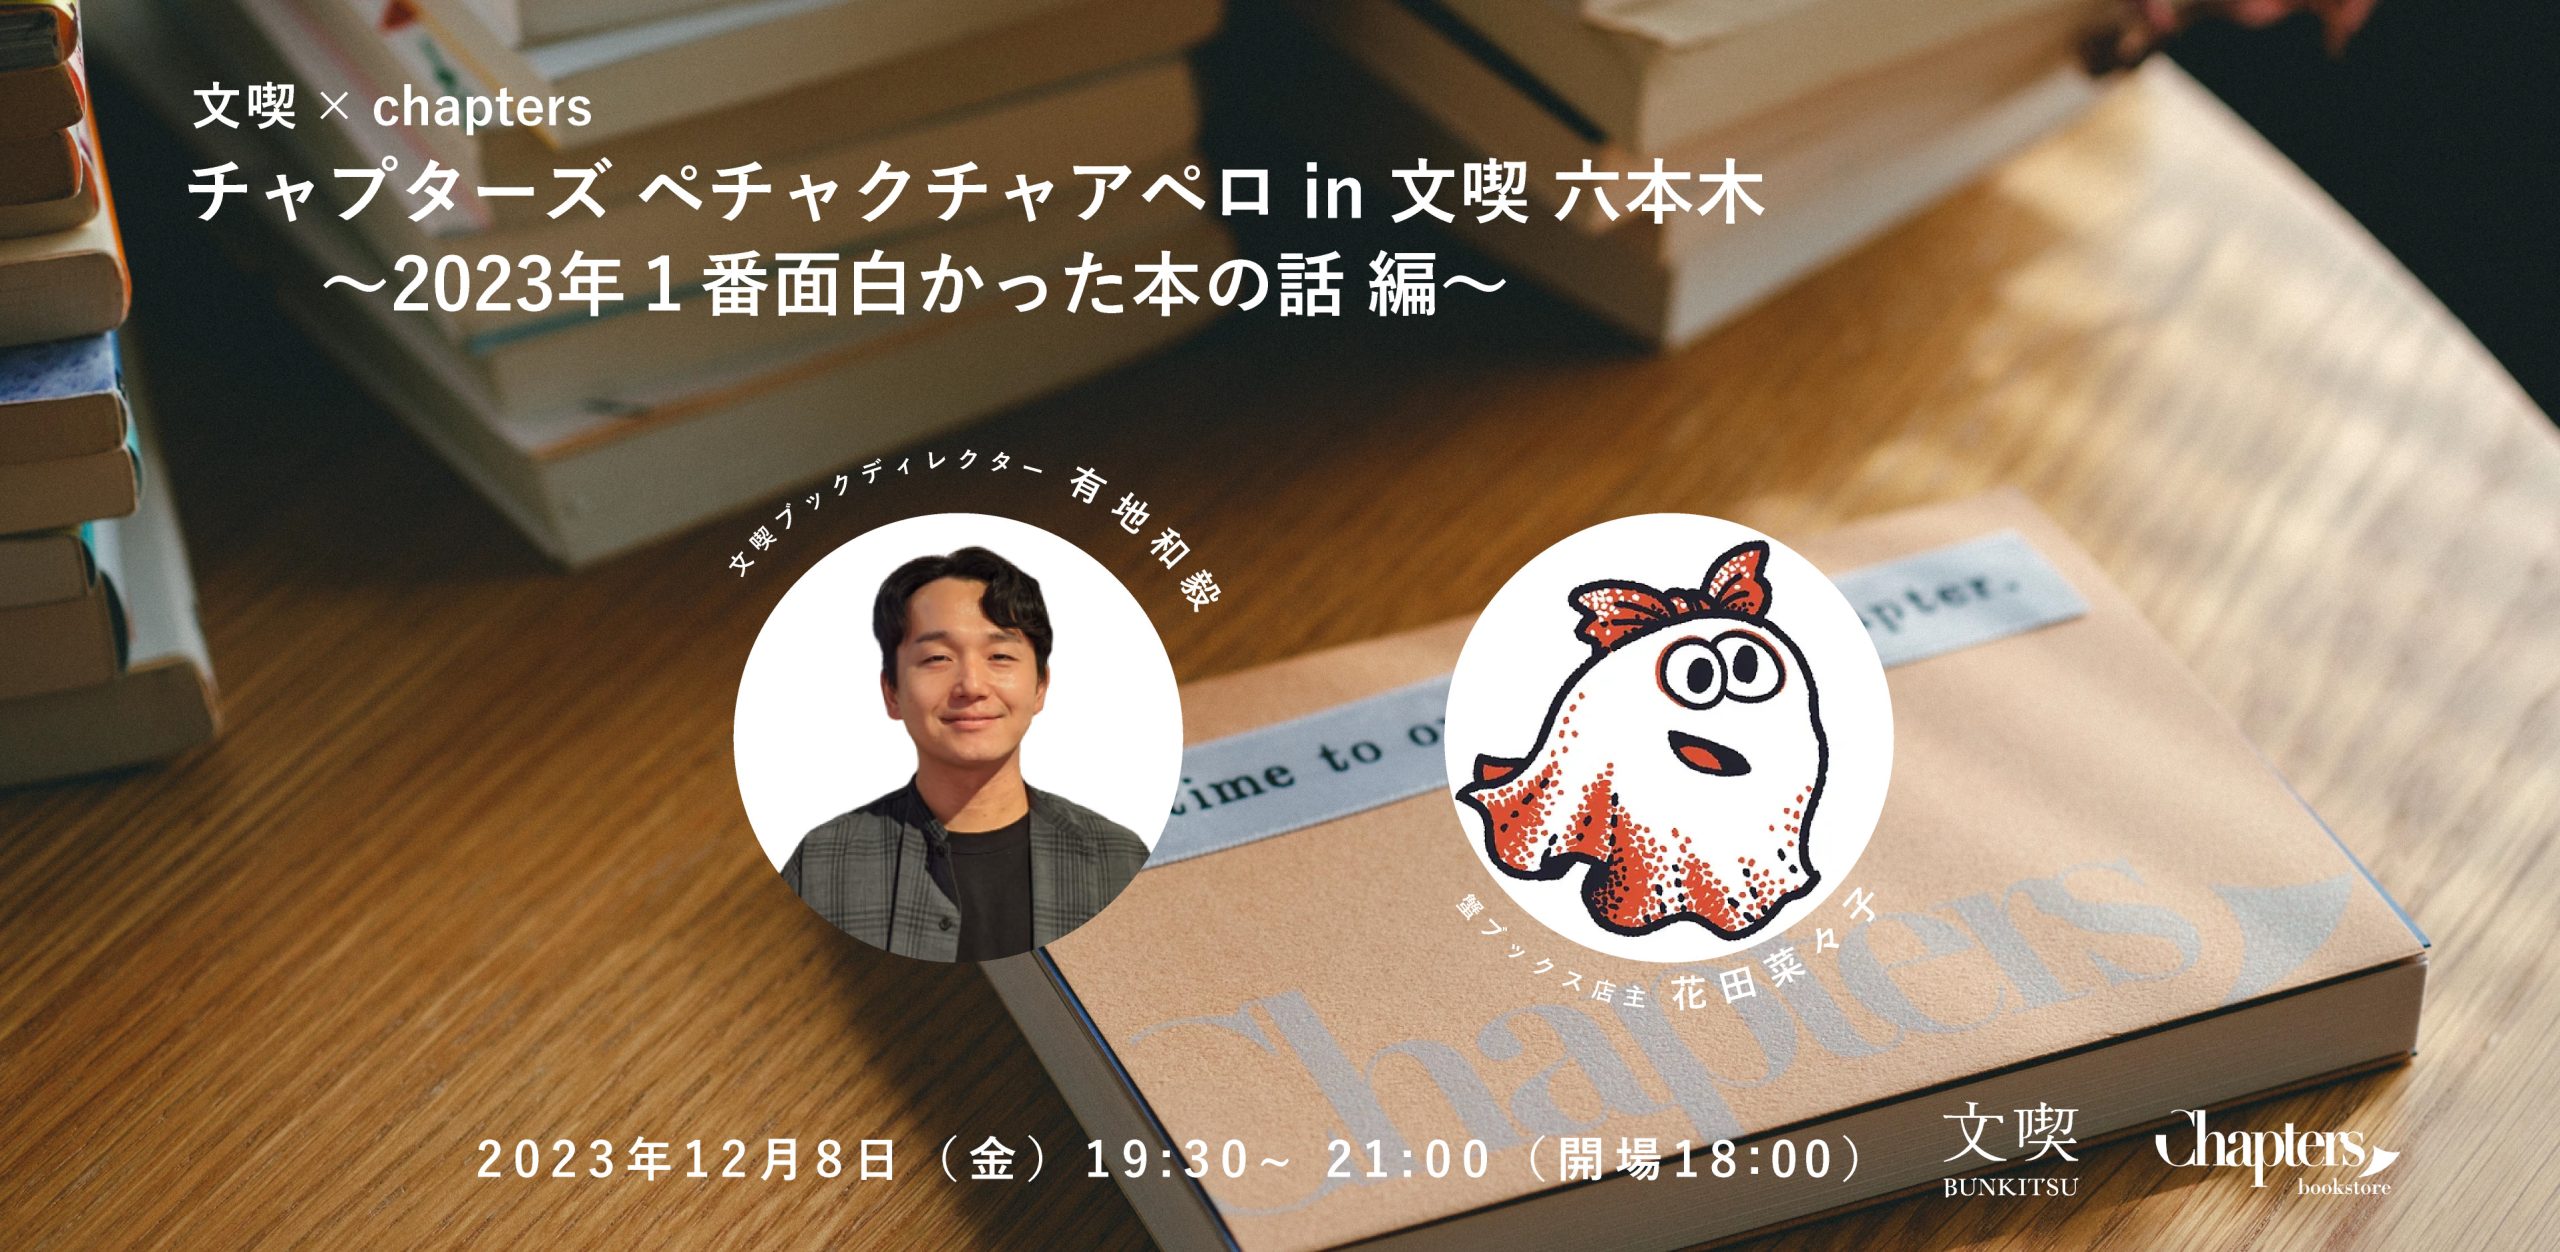 【12月8日】Chapters書店×文喫 ペチャクチャアペロ